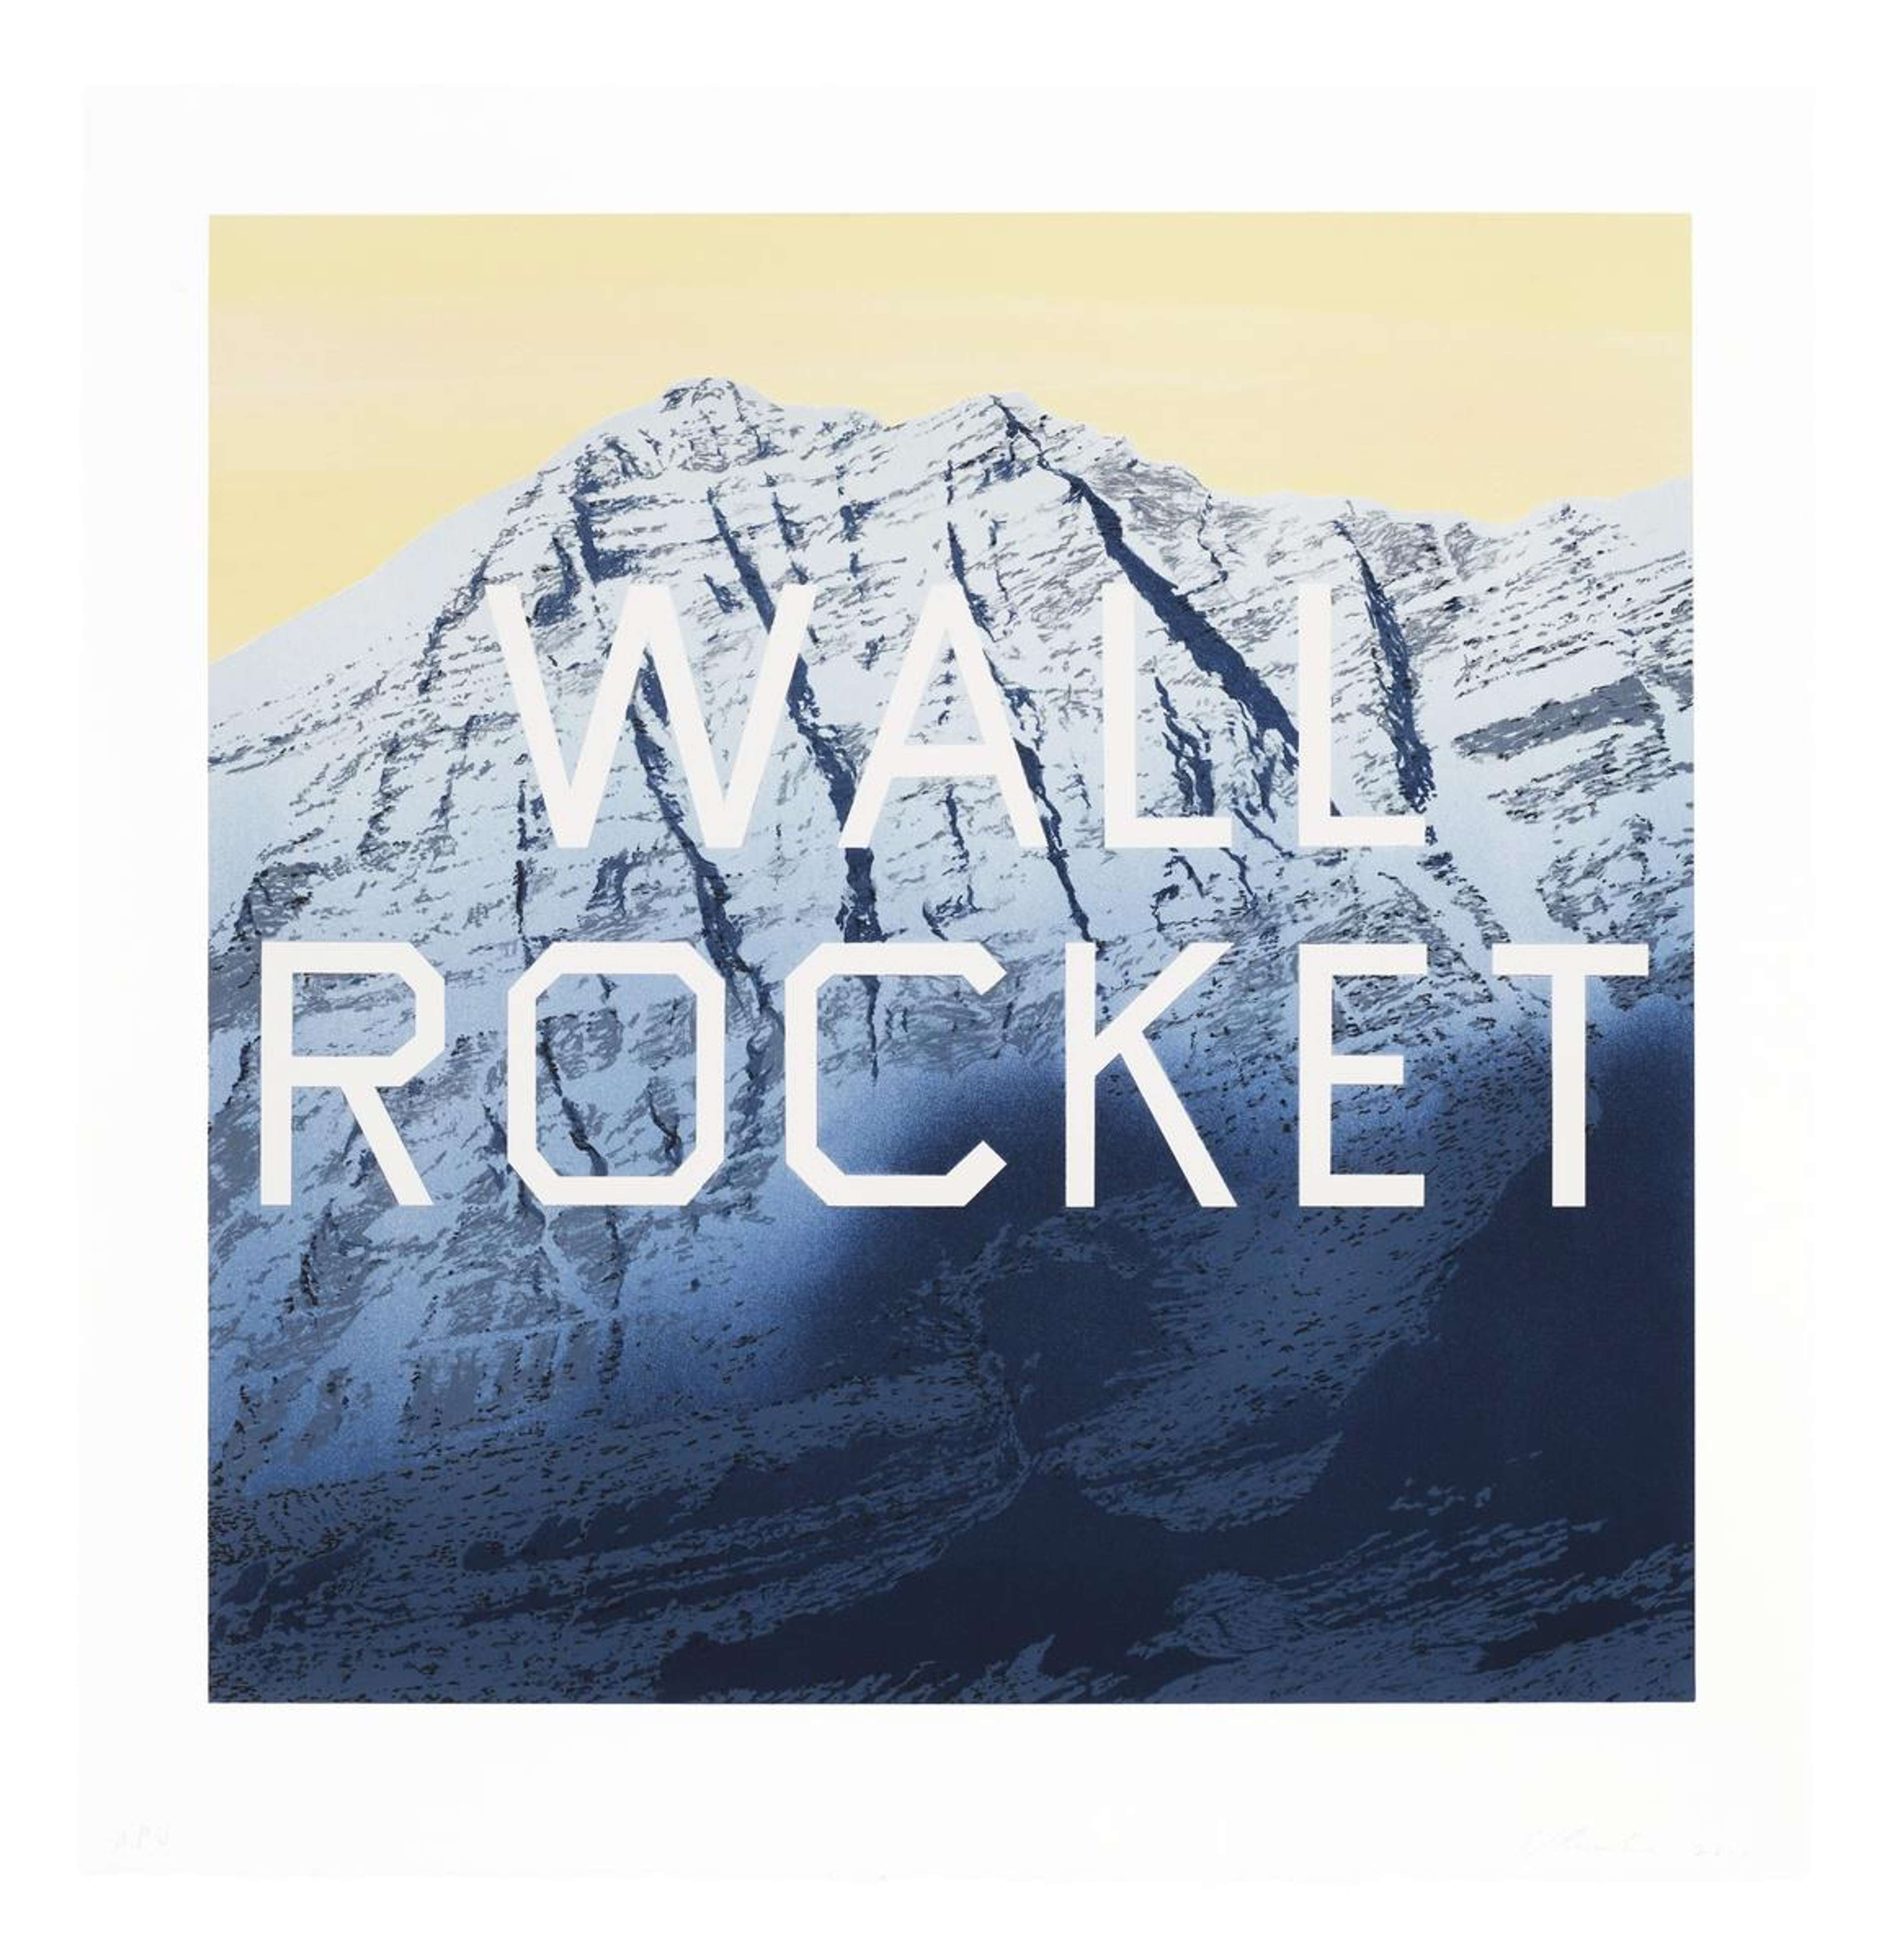 Wall Rocket - Signed Print